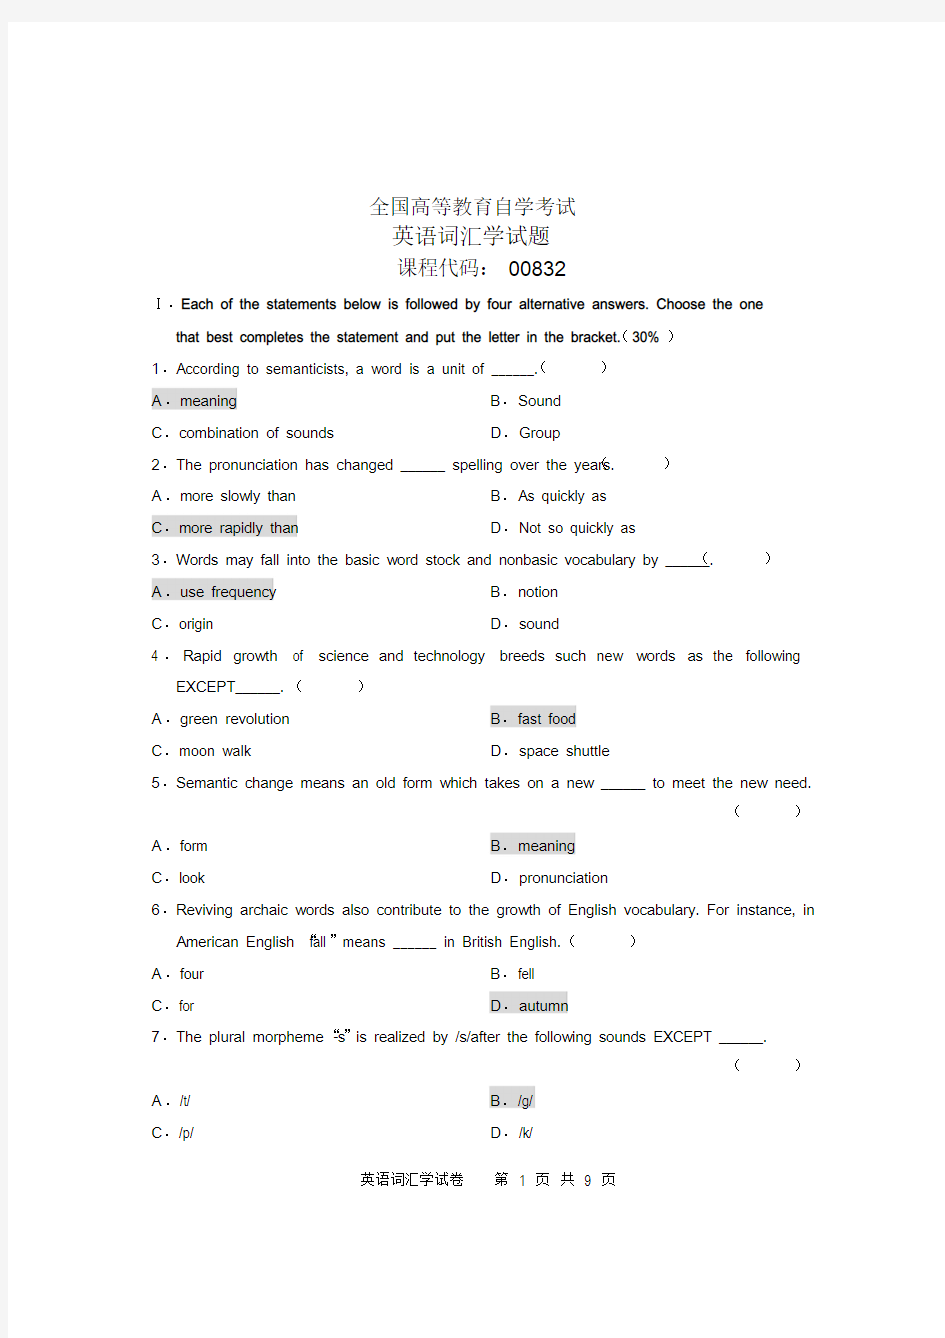 全国英语词汇学(00832)高等教育自学考试试题与答案